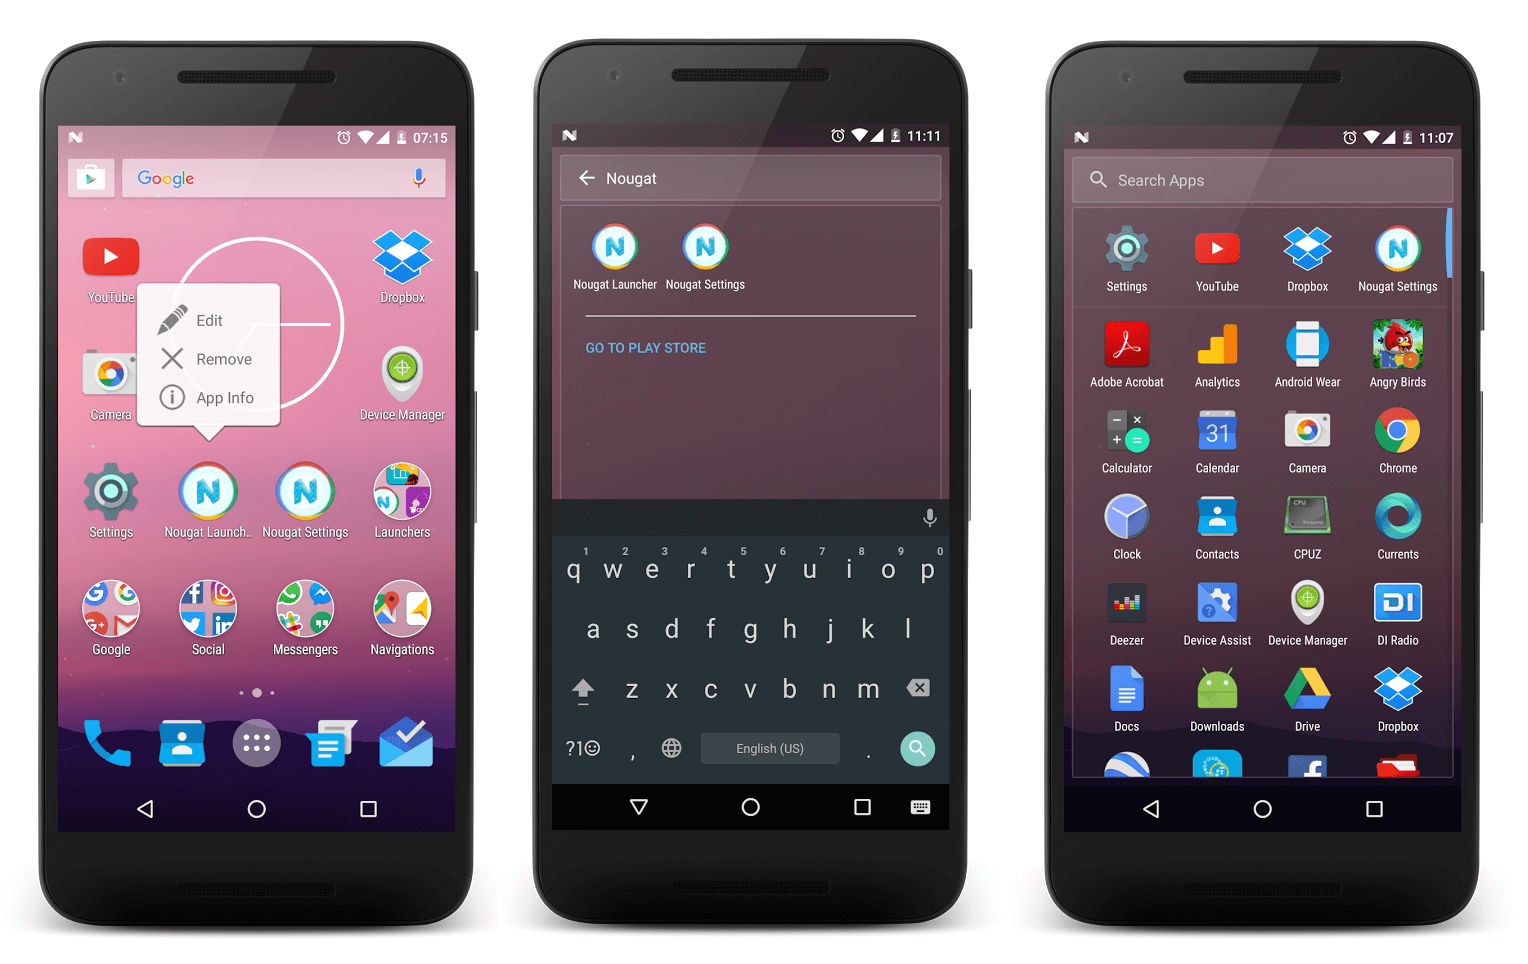 fond d'écran android 7.0 nougat,téléphone portable,gadget,dispositif de communication,dispositif de communication portable,téléphone intelligent